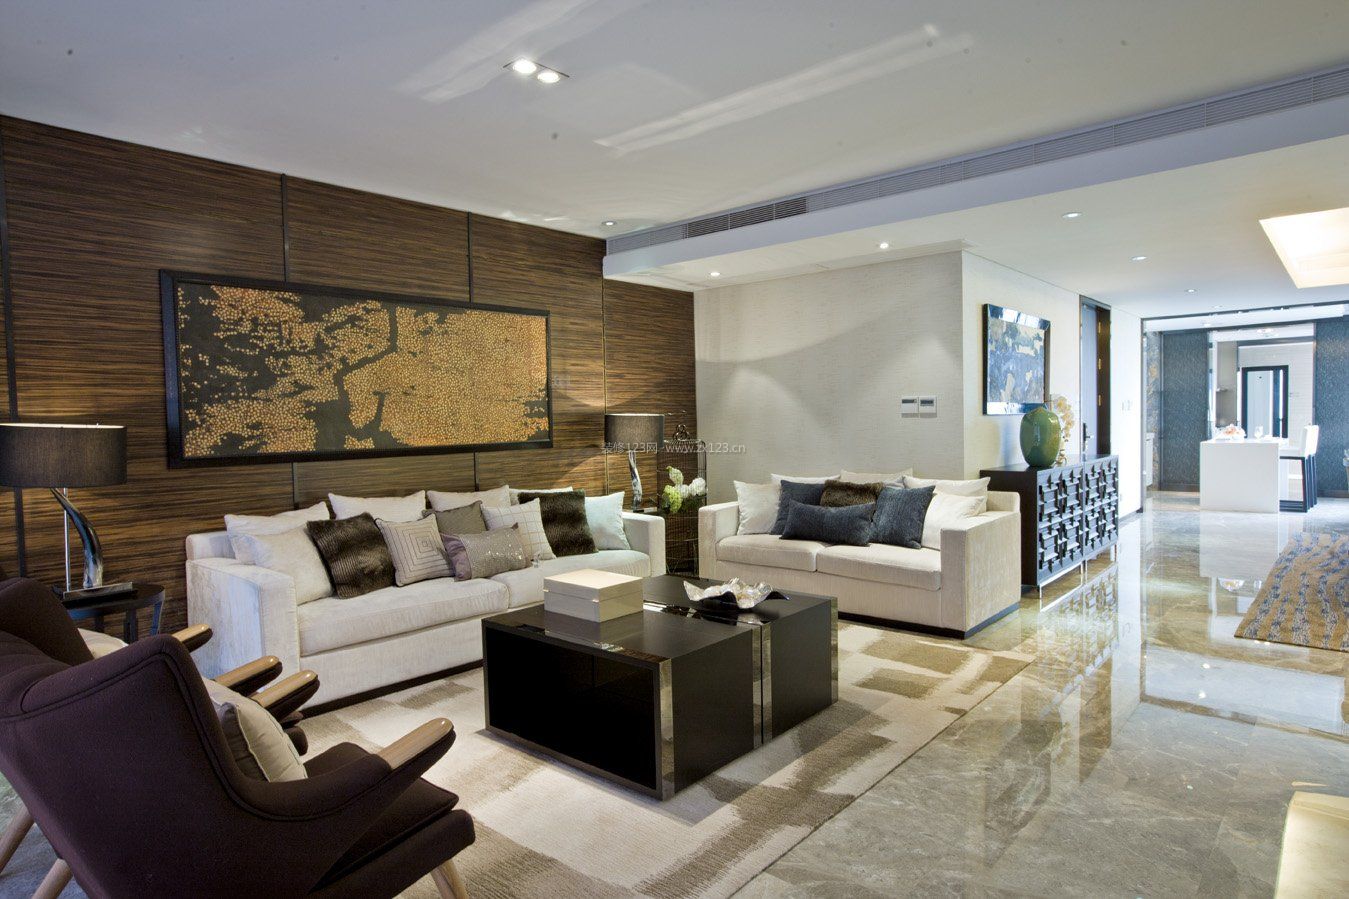 东南亚风格家居客厅沙发设计图